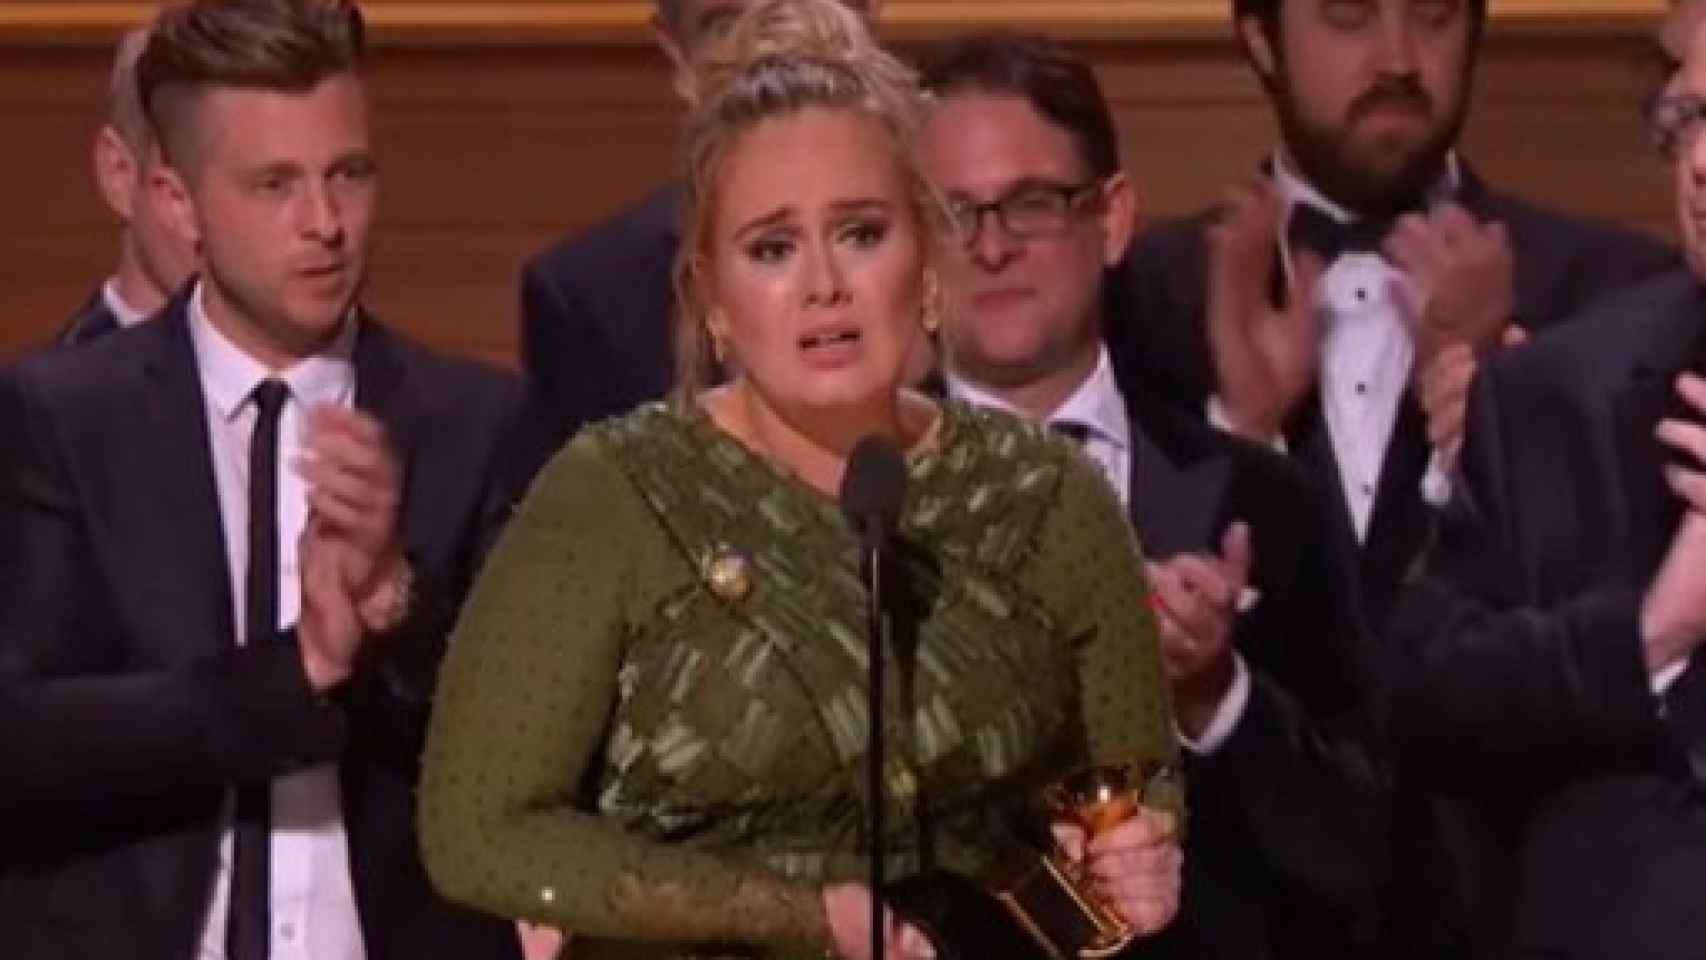 Image: Adele triunfa en los Grammy más reivindicativos